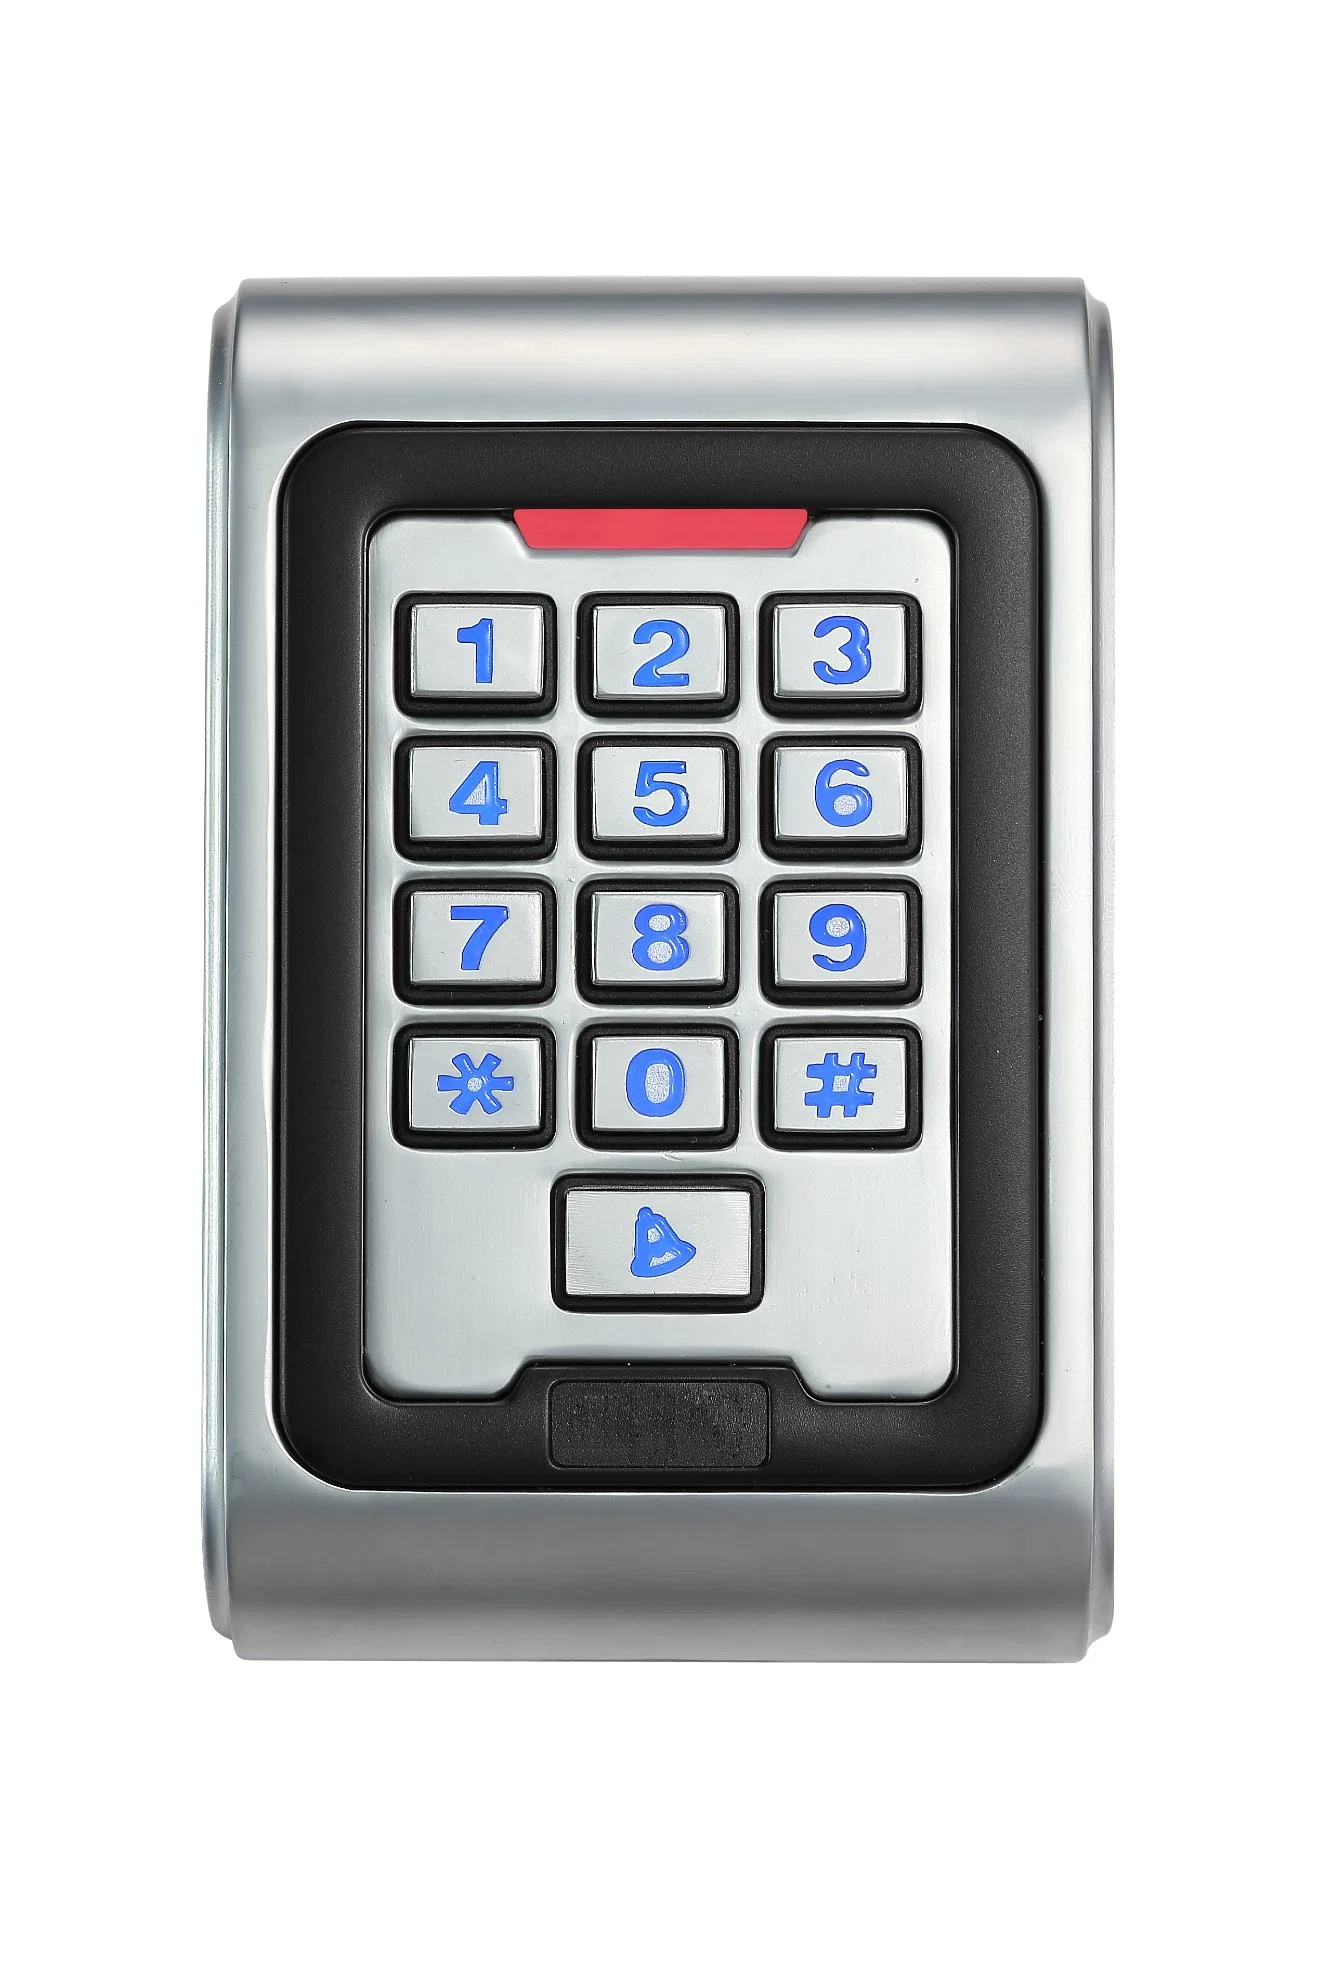 Nuevo teclado de metal resistente al agua IP68, sistemas de control de seguridad de la entrada de tarjeta de identificación de Em lectora de teclado Control de acceso RFID puerta independiente